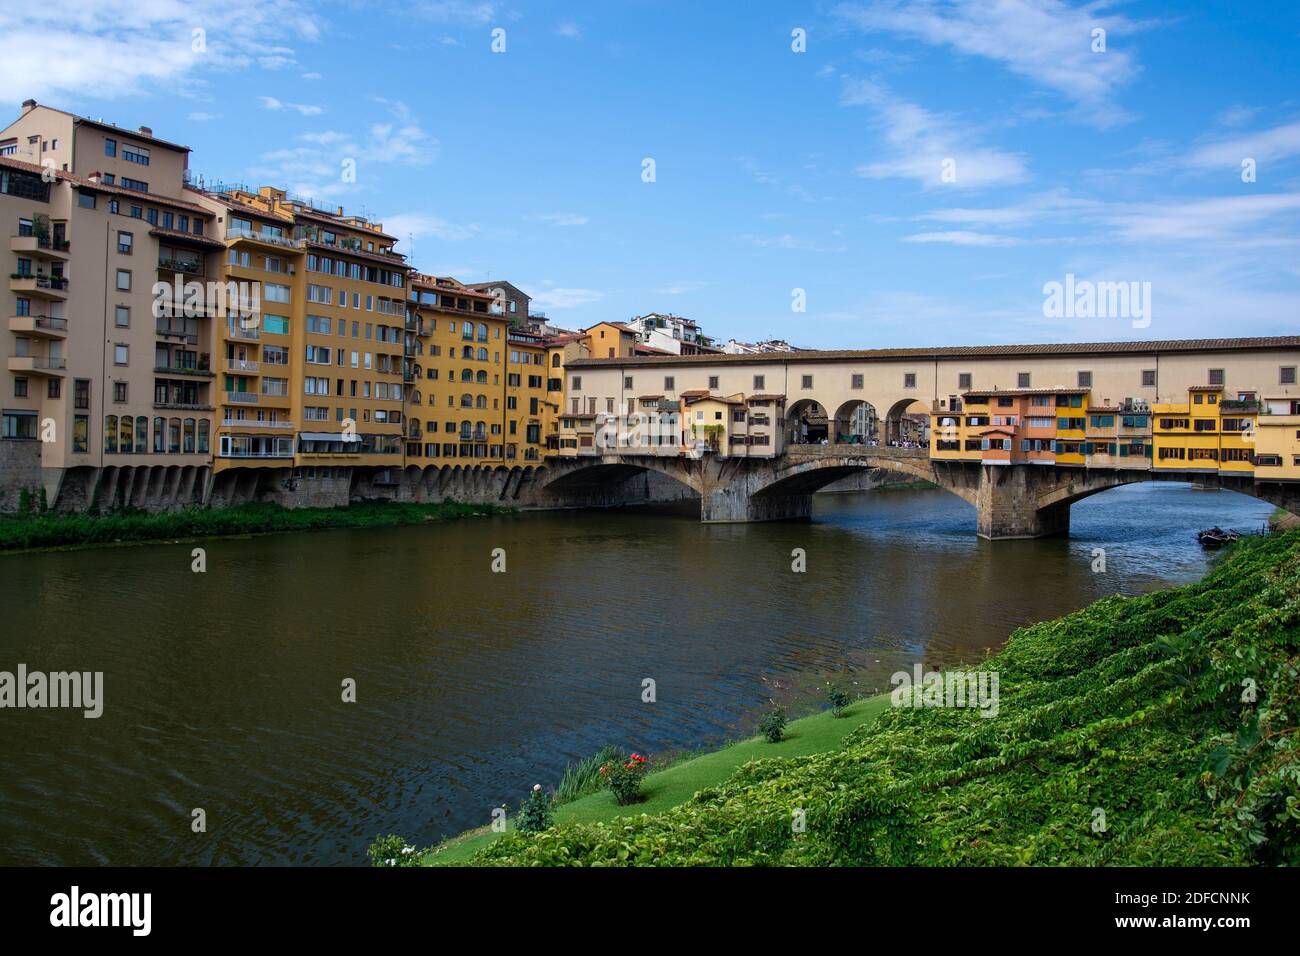 Der Ponte Vecchio ist die älteste Brücke über den Arno in der italienischen Stadt Florenz und gilt als eine der ältesten Segmentbogenbrücken der Welt. Stock Photo